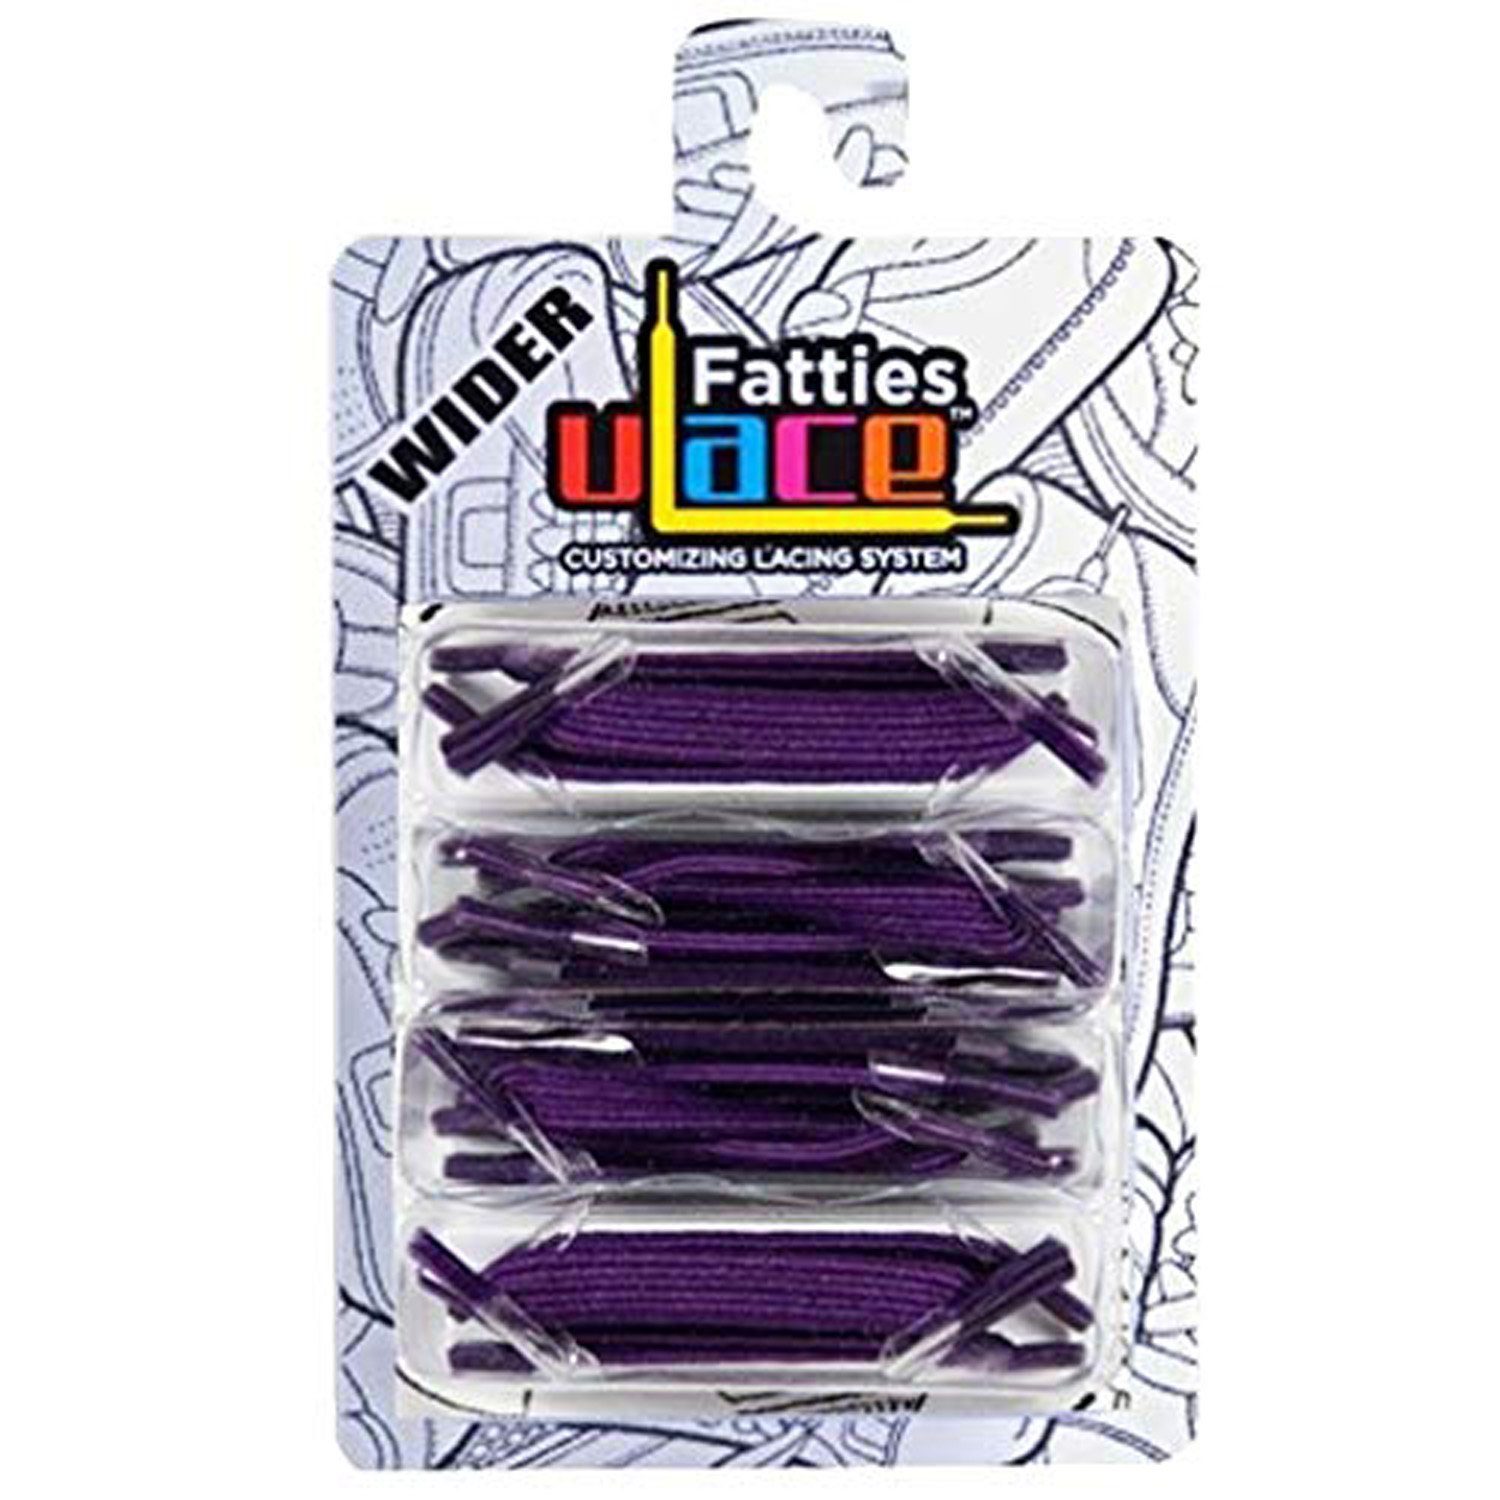 16 Wiederhaken Schnürsenkel Purple X-Wide - elastische U-Laces Stück mit Fatties Schnürsenkel